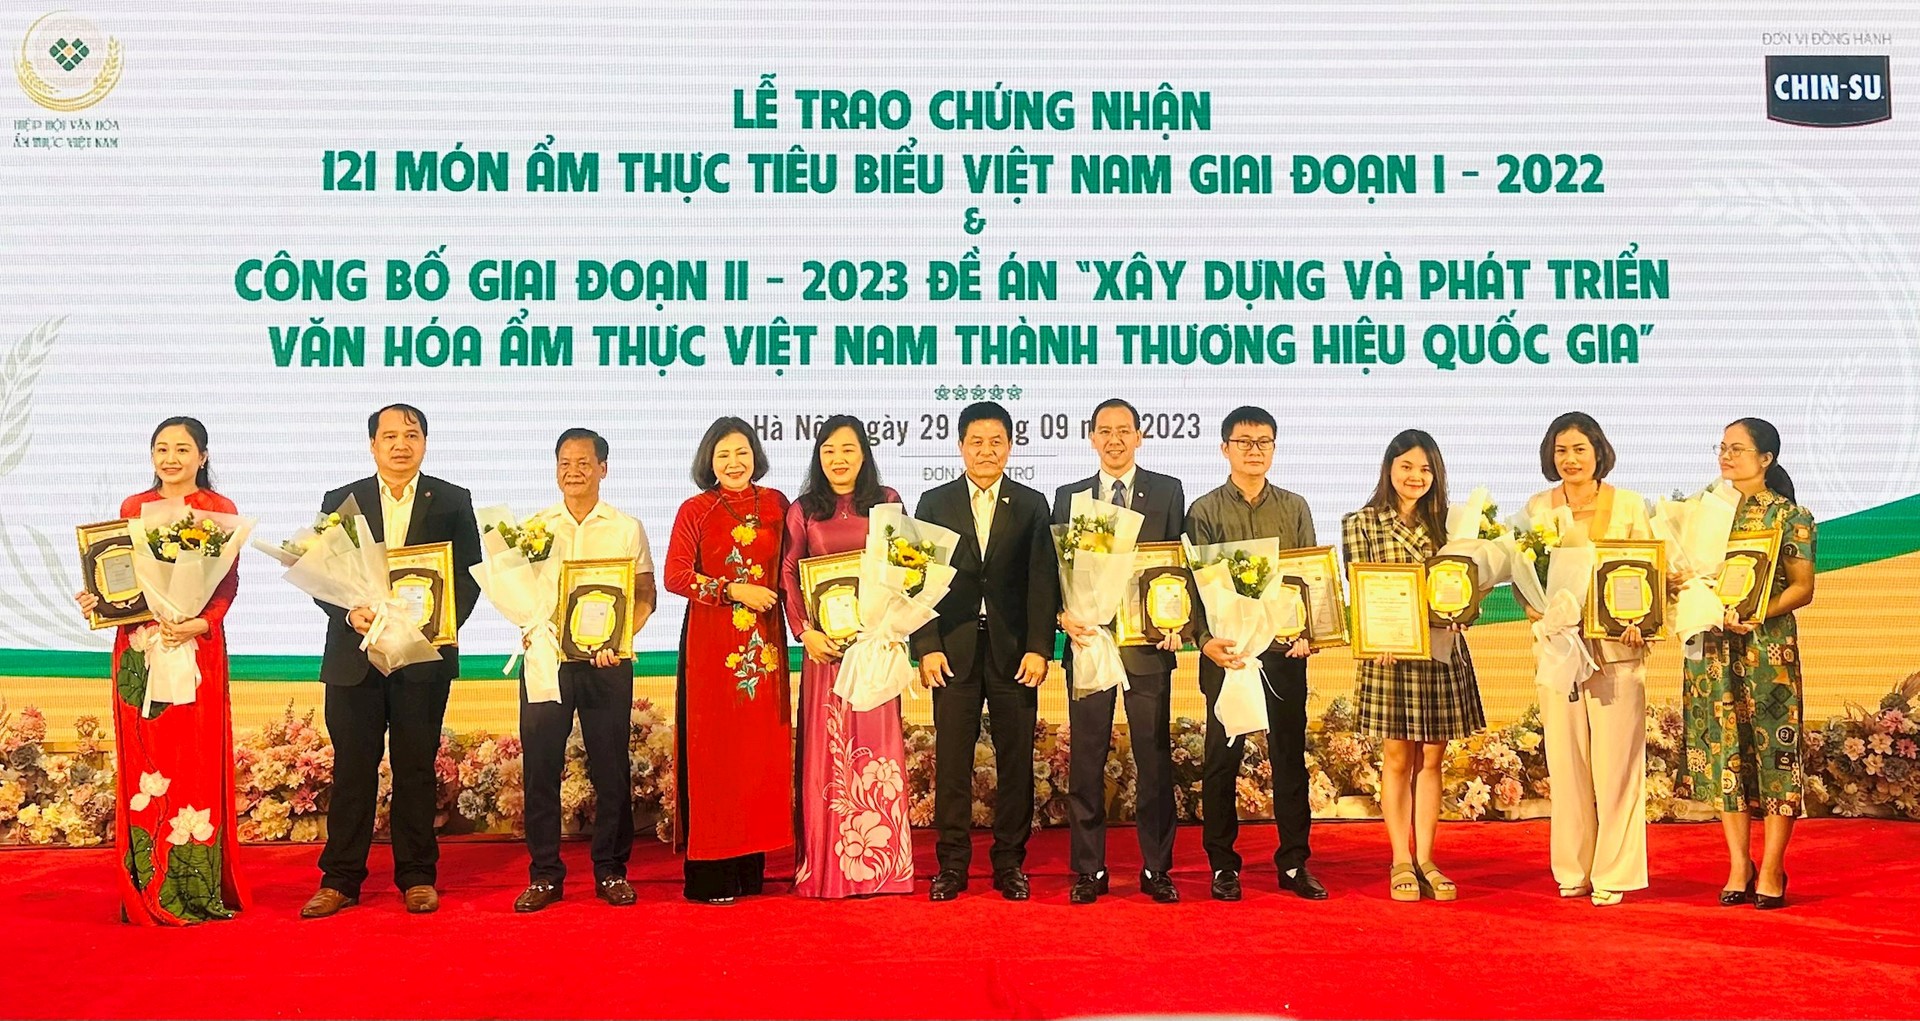 Bún suông, canh xiêm lo và bánh tét Trà Cuôn của tỉnh Trà Vinh được chứng nhận ẩm thực tiêu biểu Việt Nam